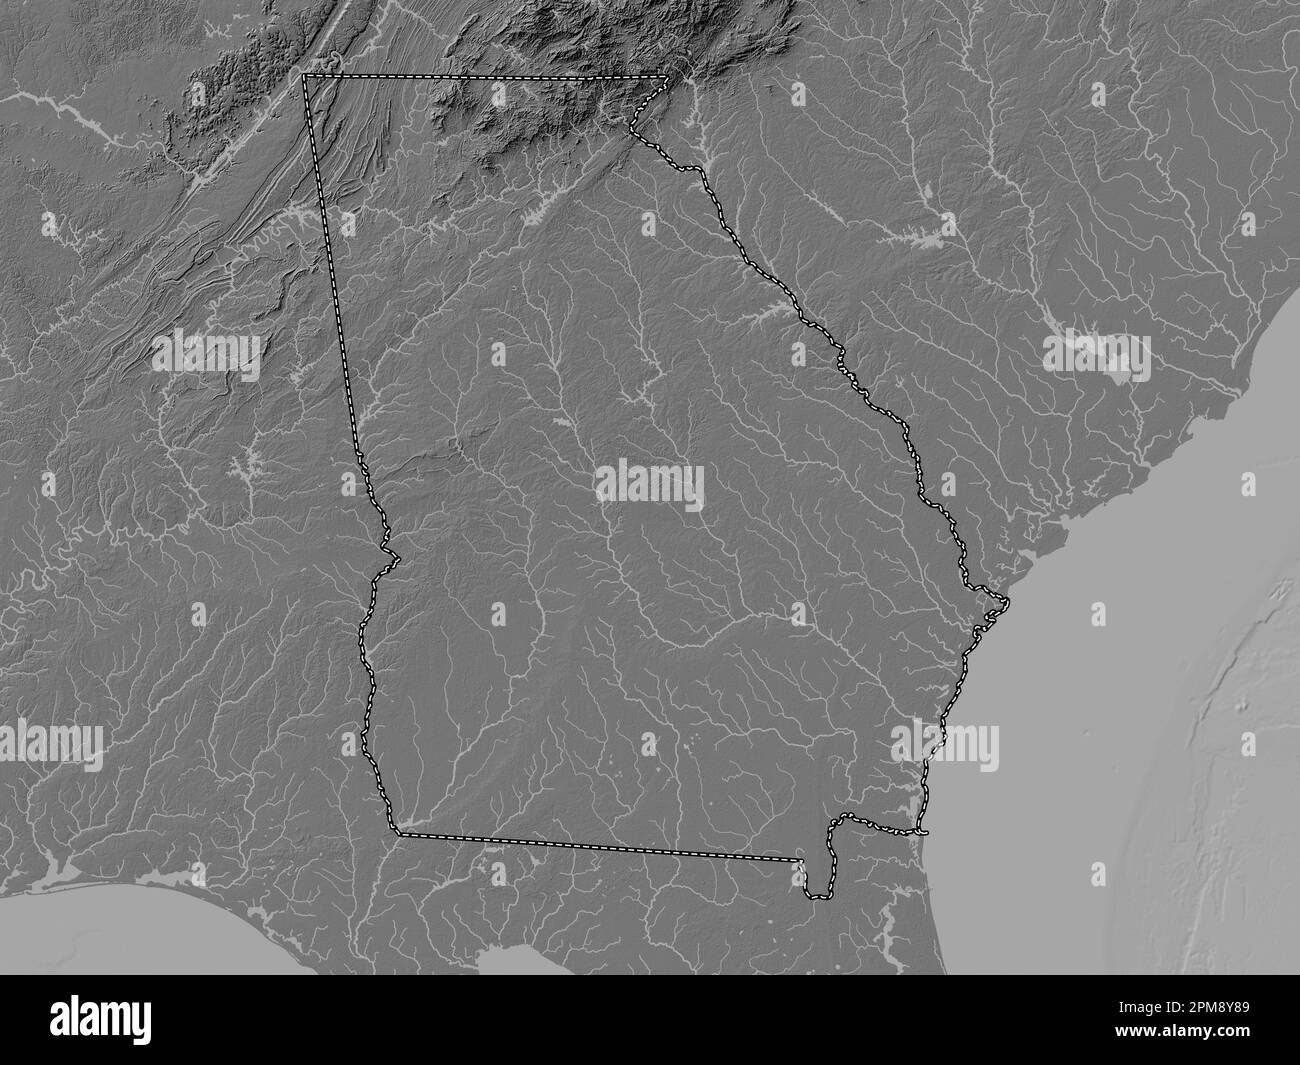 Georgia, Bundesstaat der Vereinigten Staaten von Amerika. Bilevel-Höhenkarte mit Seen und Flüssen Stockfoto